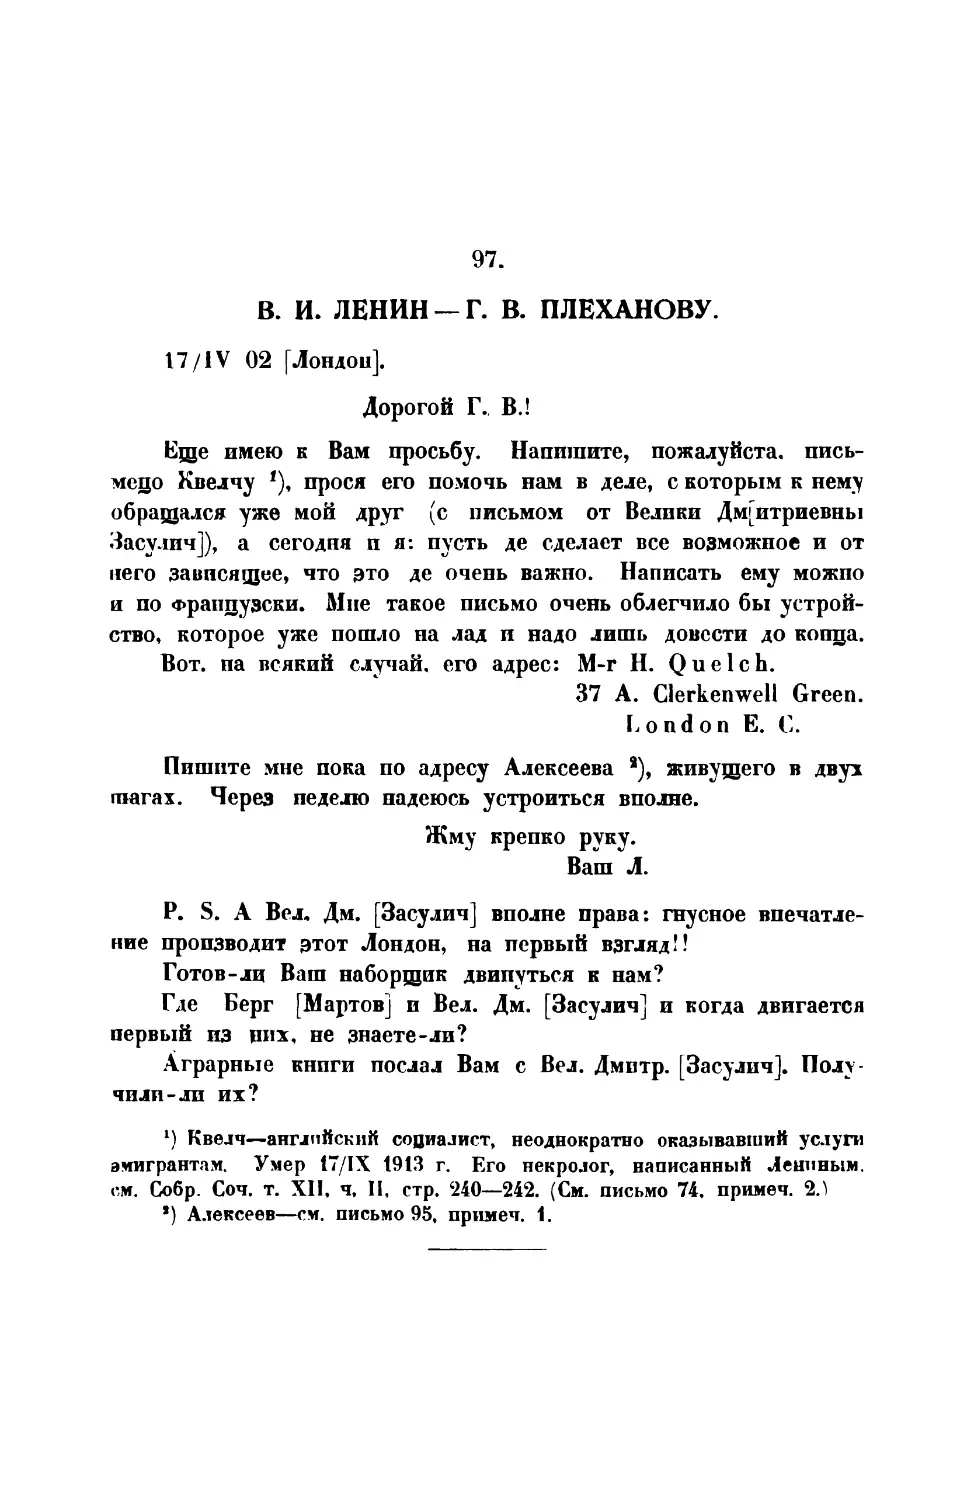 97. В. И. Ленин. — Письмо Г. В. Плеханову от 17 IV 1902 г.